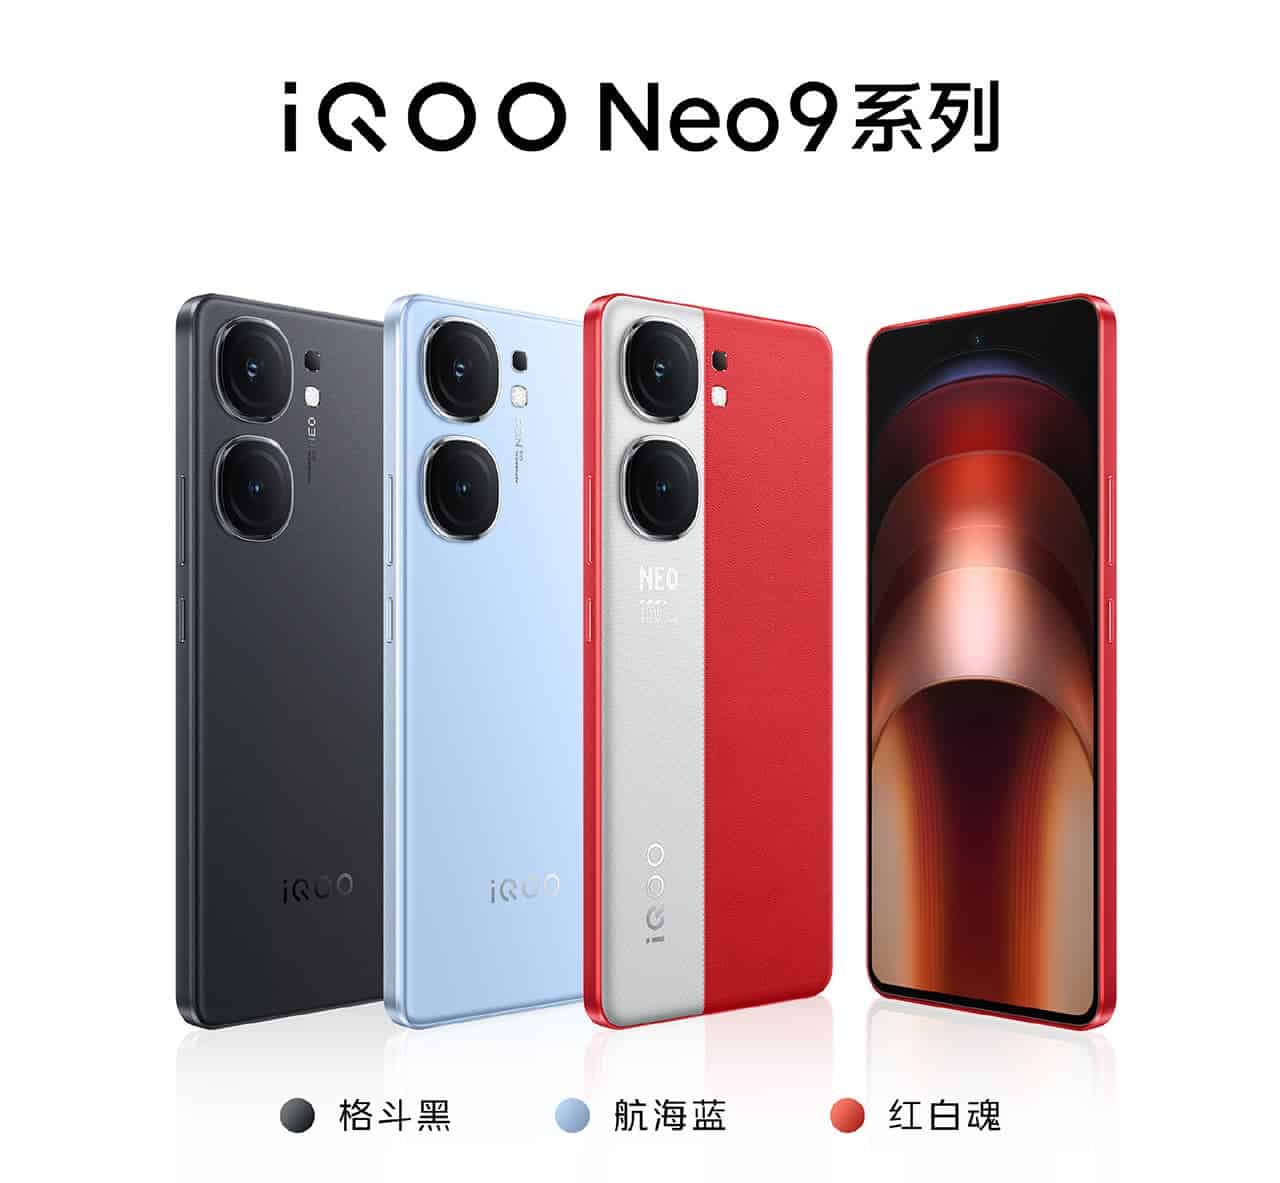 iQOO Neo9 colors